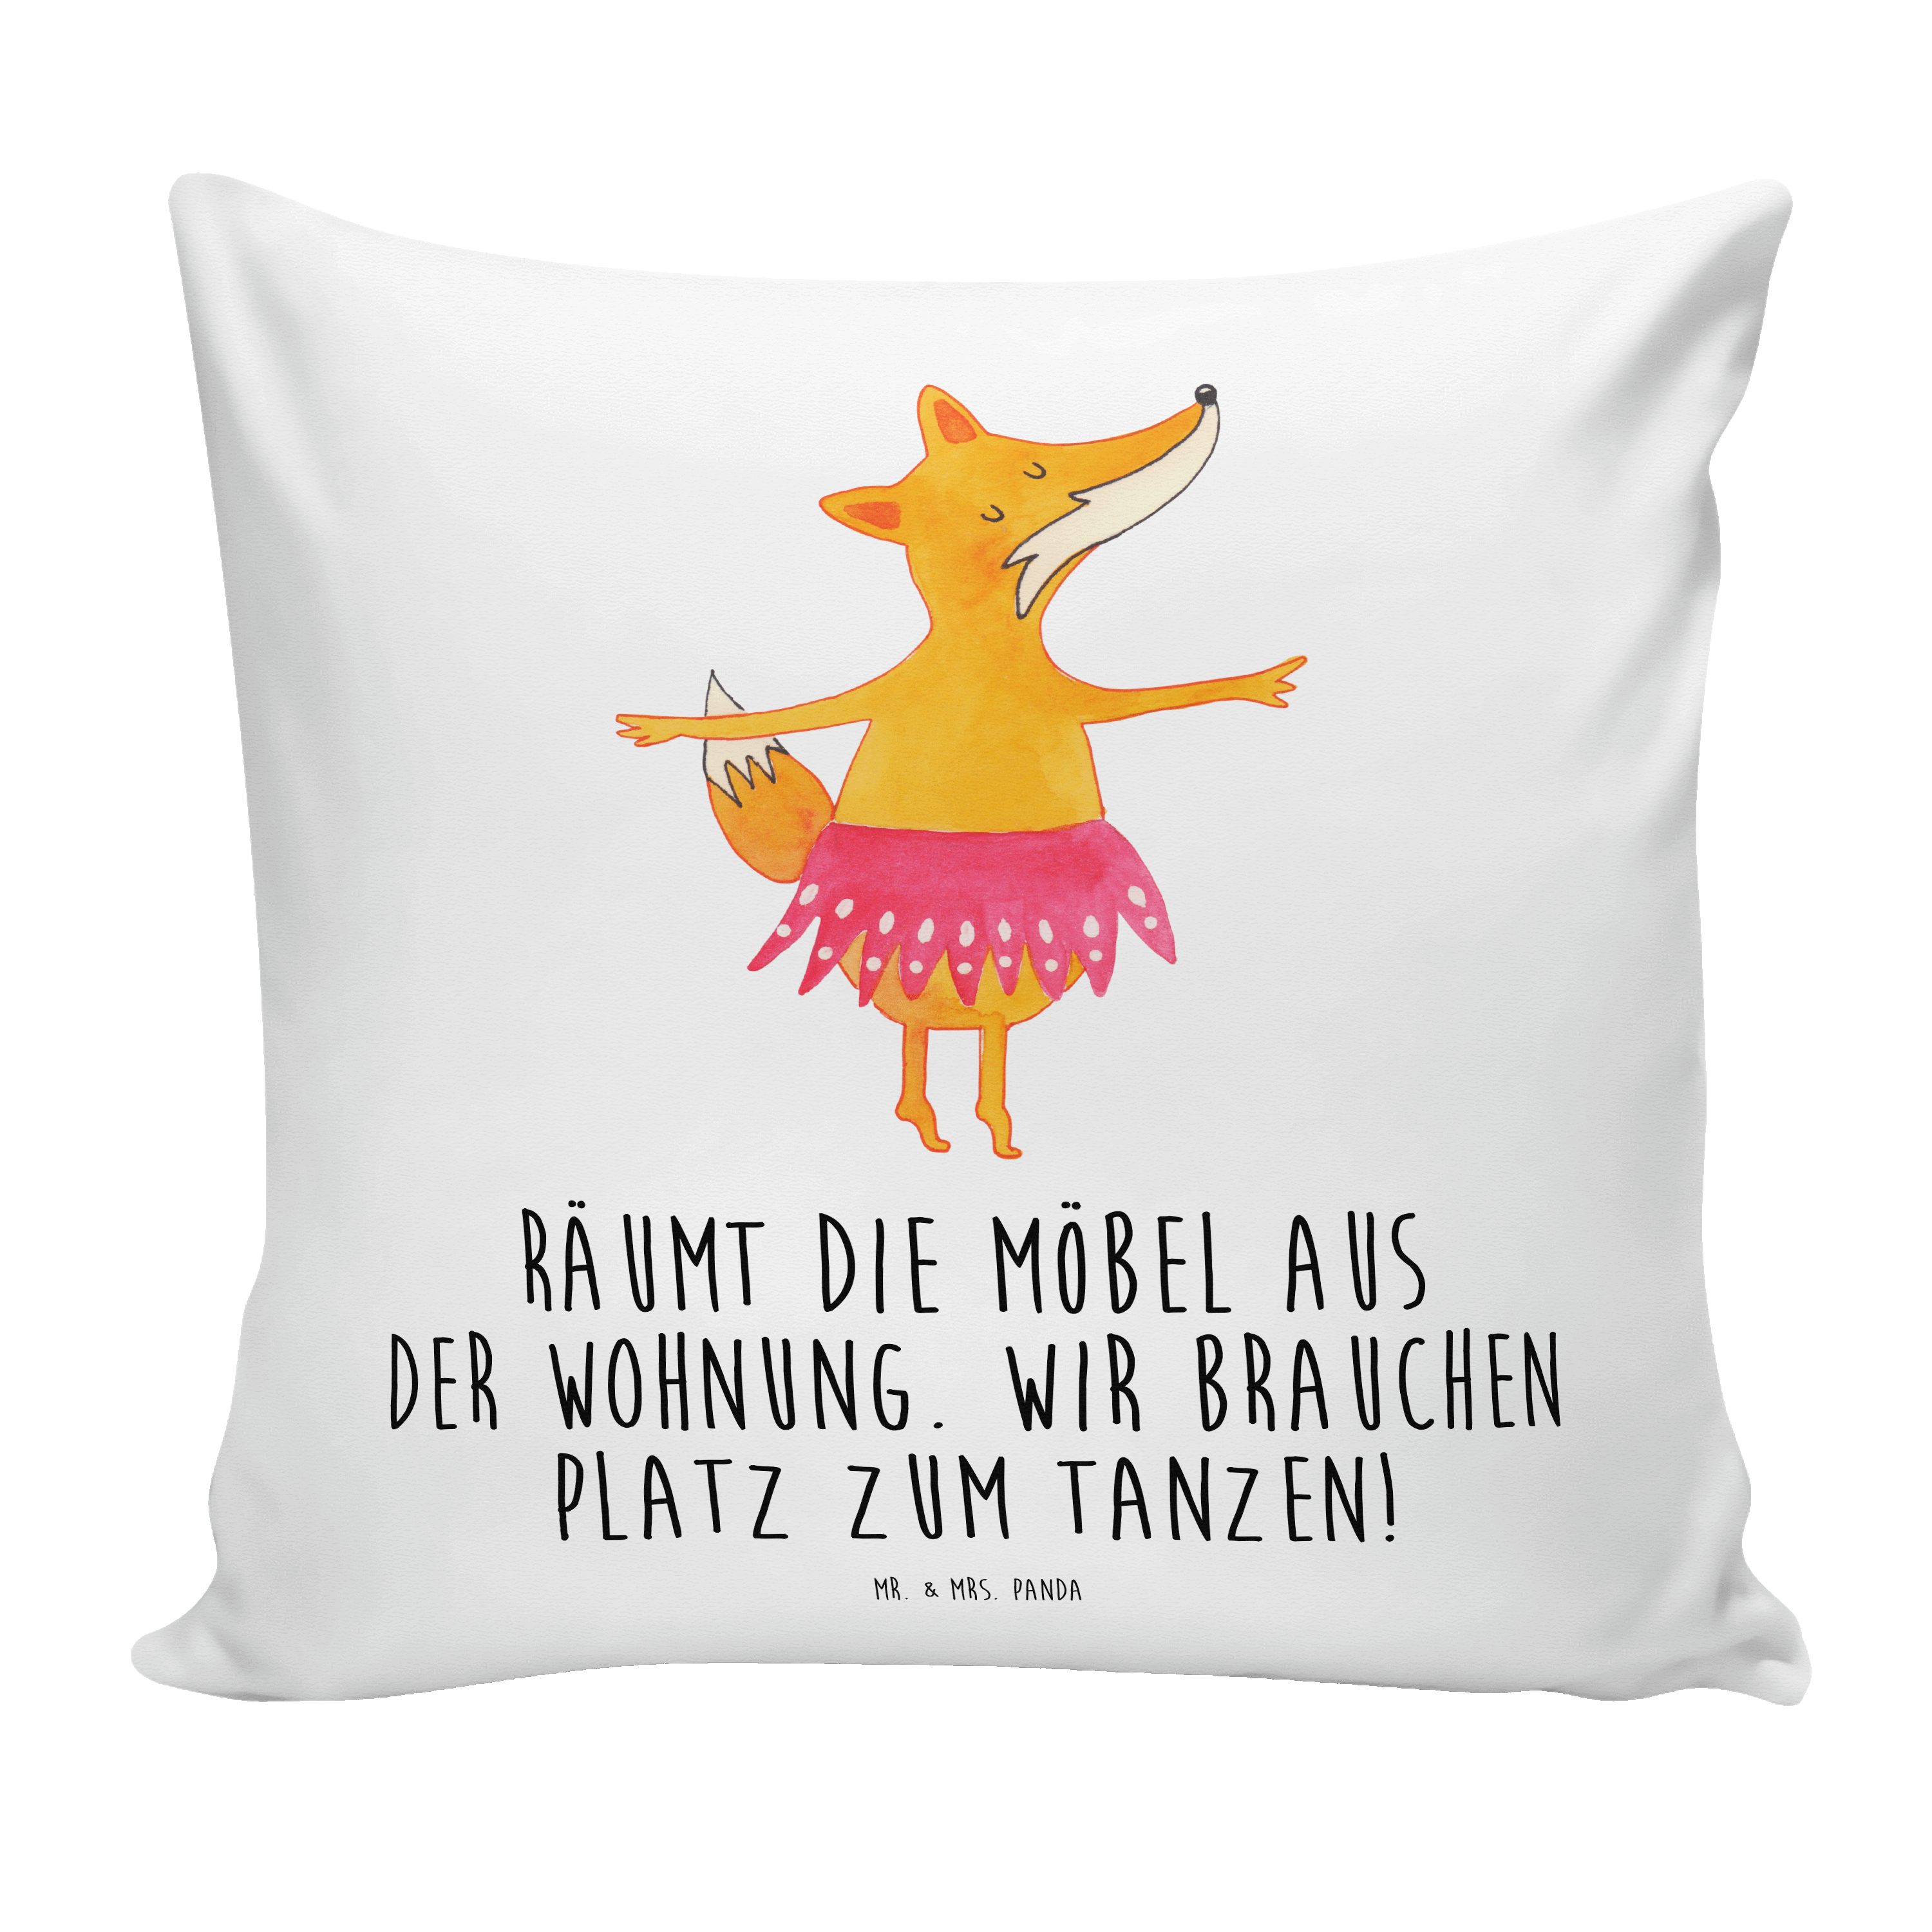 Mr. & Mrs. Panda Dekokissen Fuchs Ballerina - Weiß - Geschenk, Ballett, Party, Kissenhülle, Kopfk